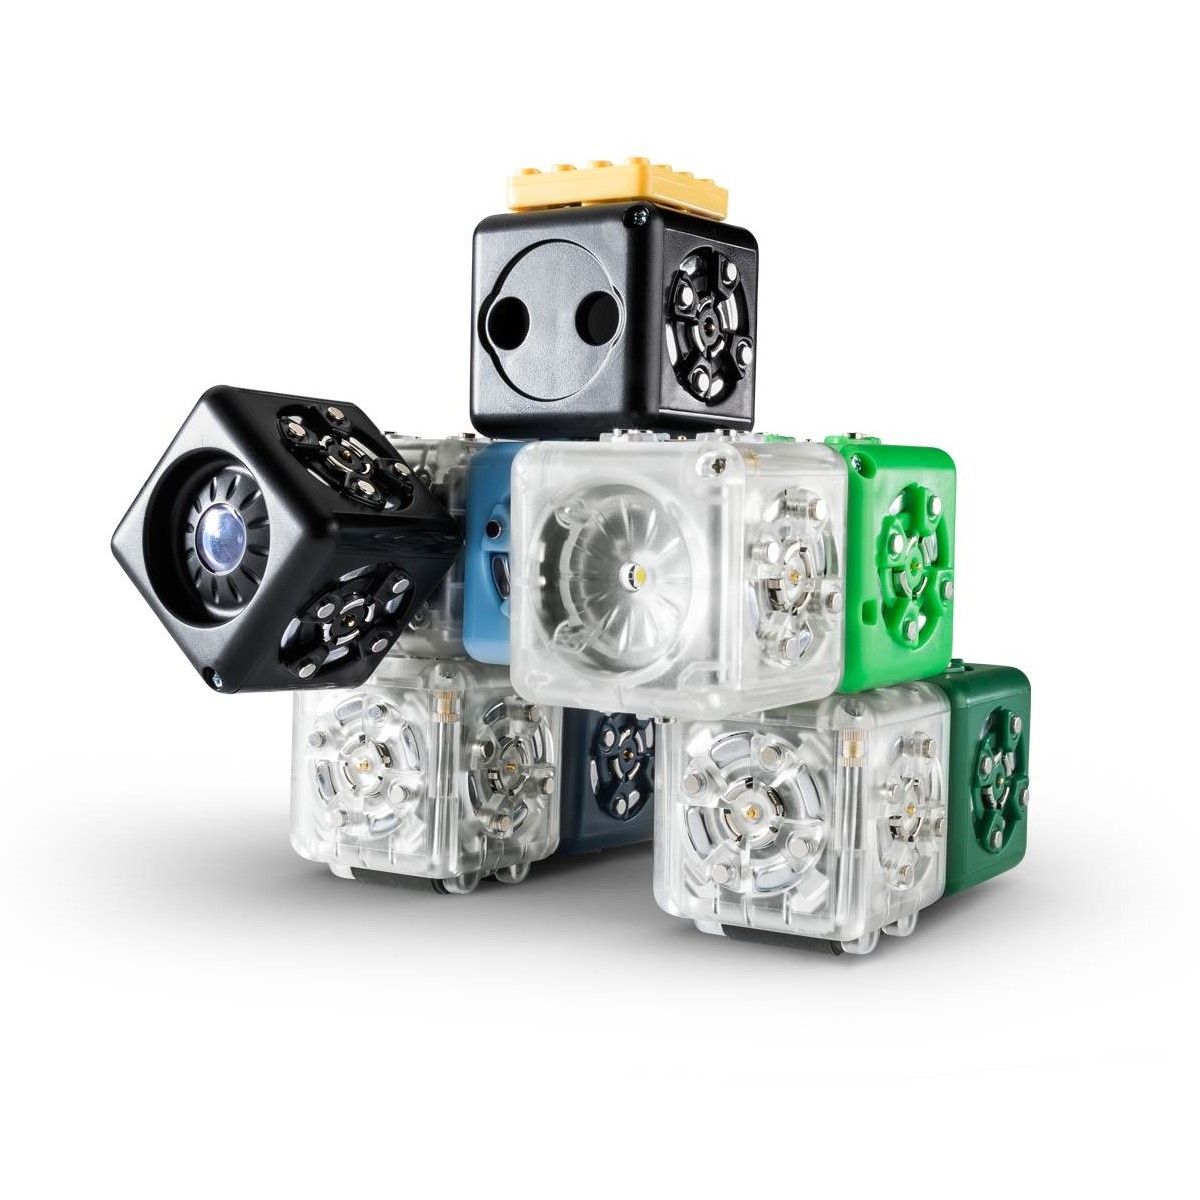 Cubelets Modular Robotics